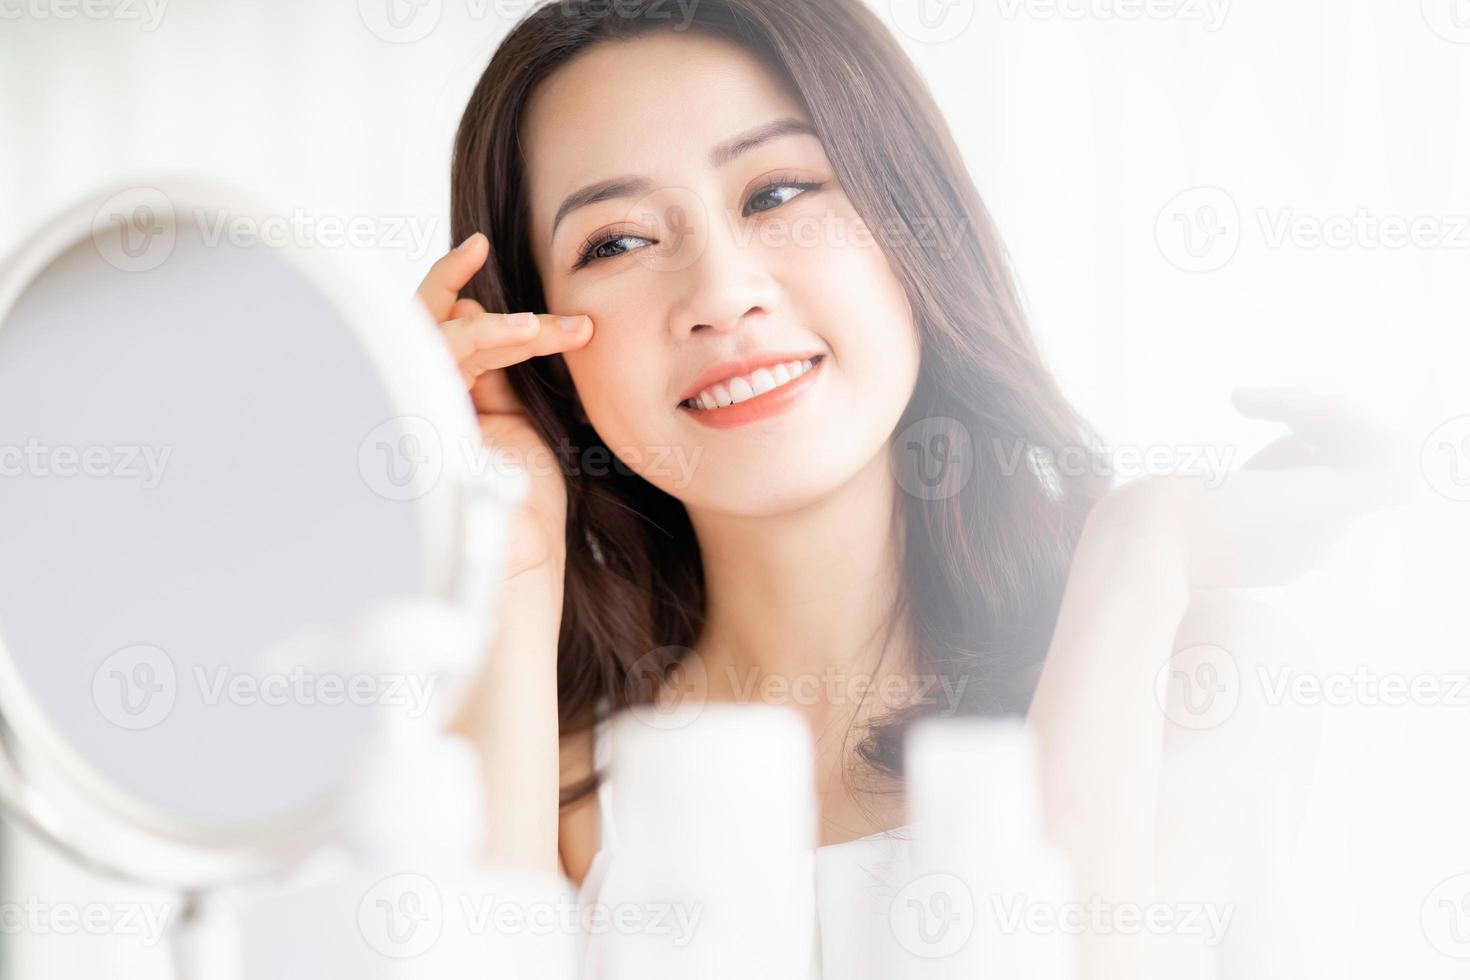 aziatische vrouw zit make-up voor spiegel foto